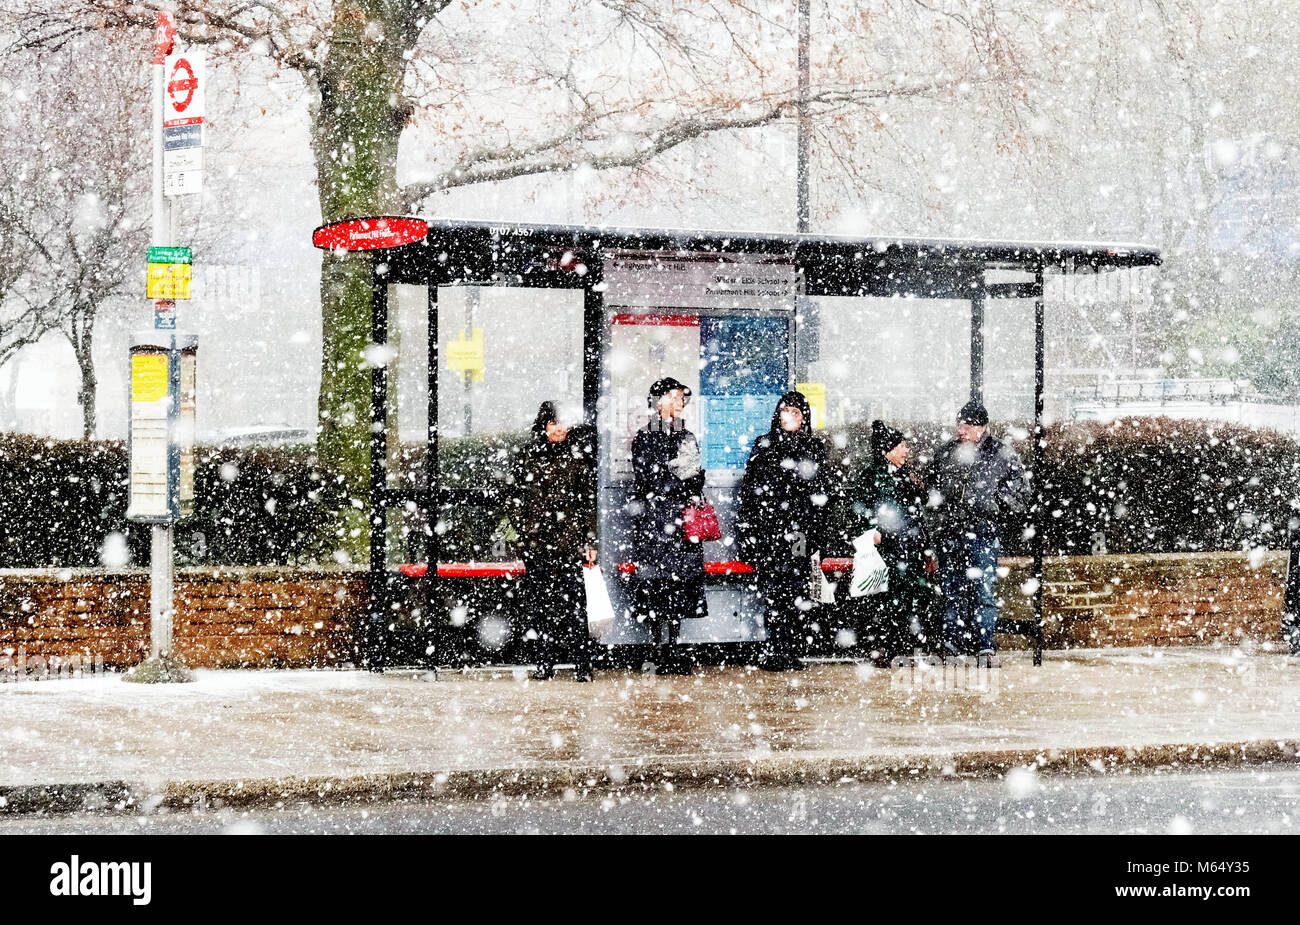 Montre : Pic de la neige et des températures de gel dans le nord de Londres aujourd'hui gel arrêt de bus pour les personnes âgées photo par Gavin Rodgers/ Pixel8000 Banque D'Images